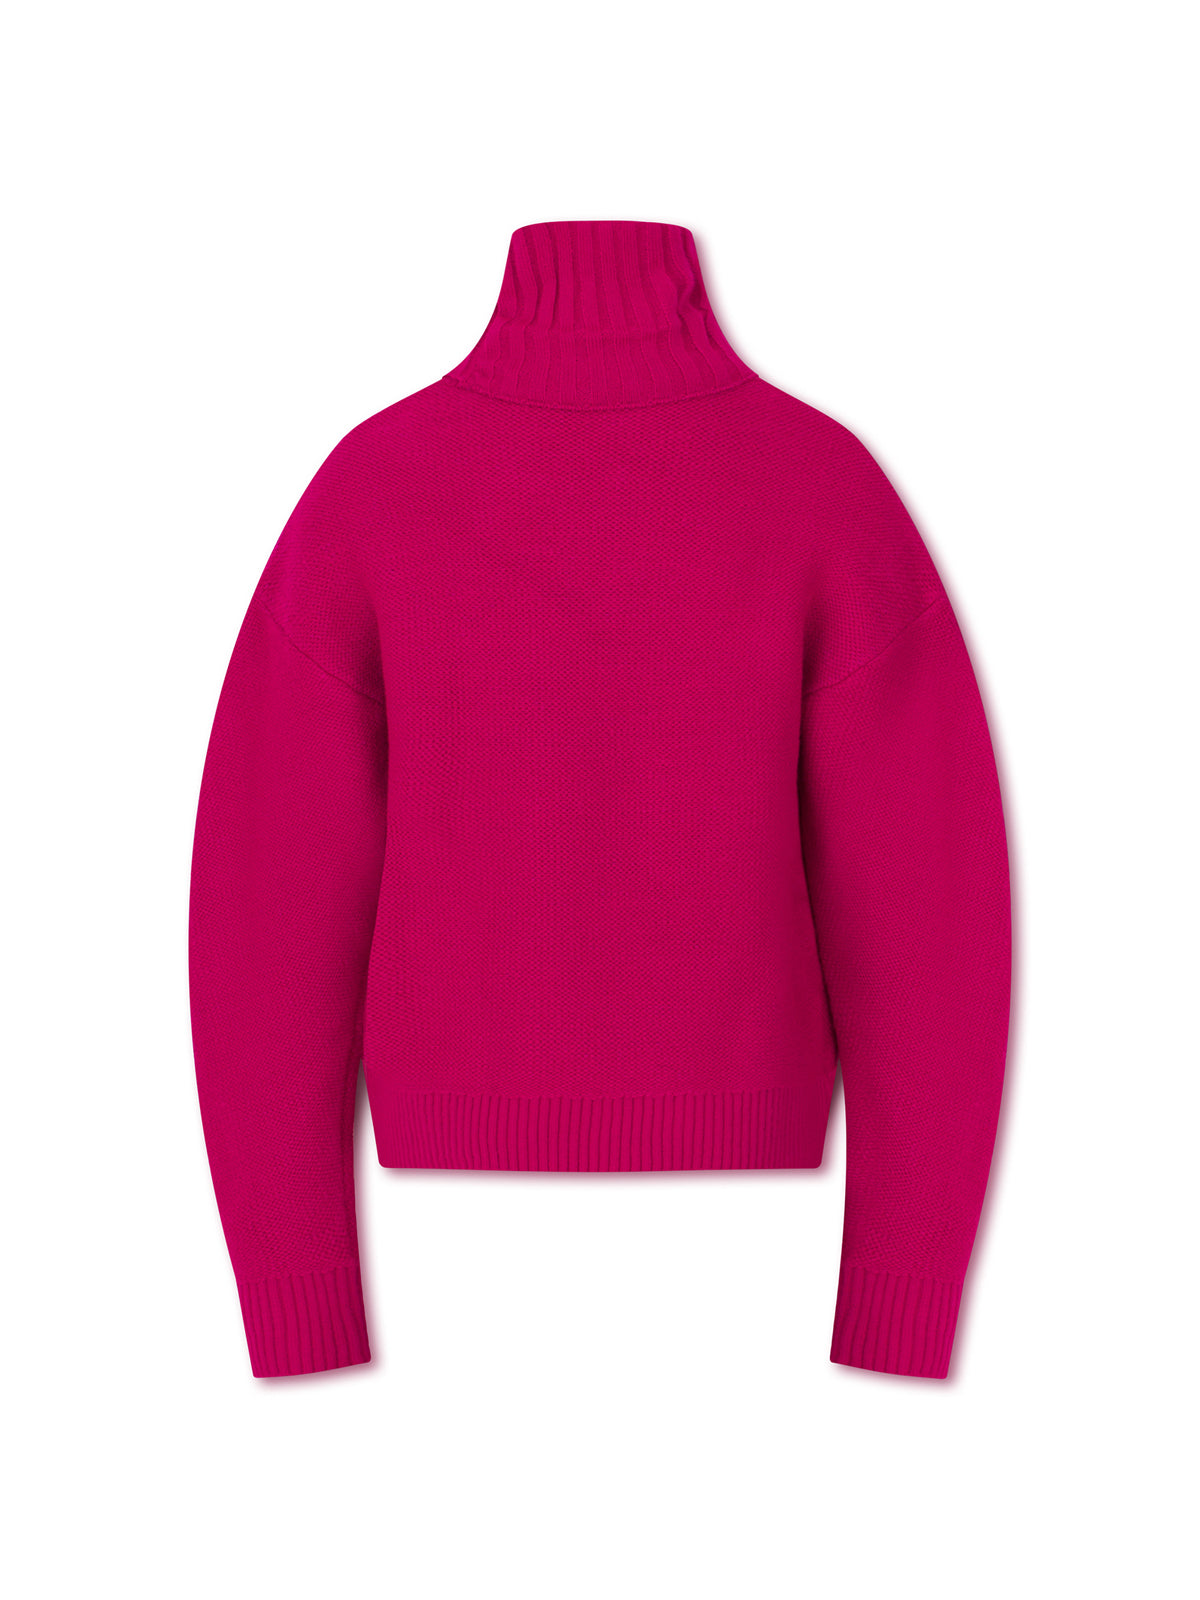 MÍA knit sweater - fuchsia